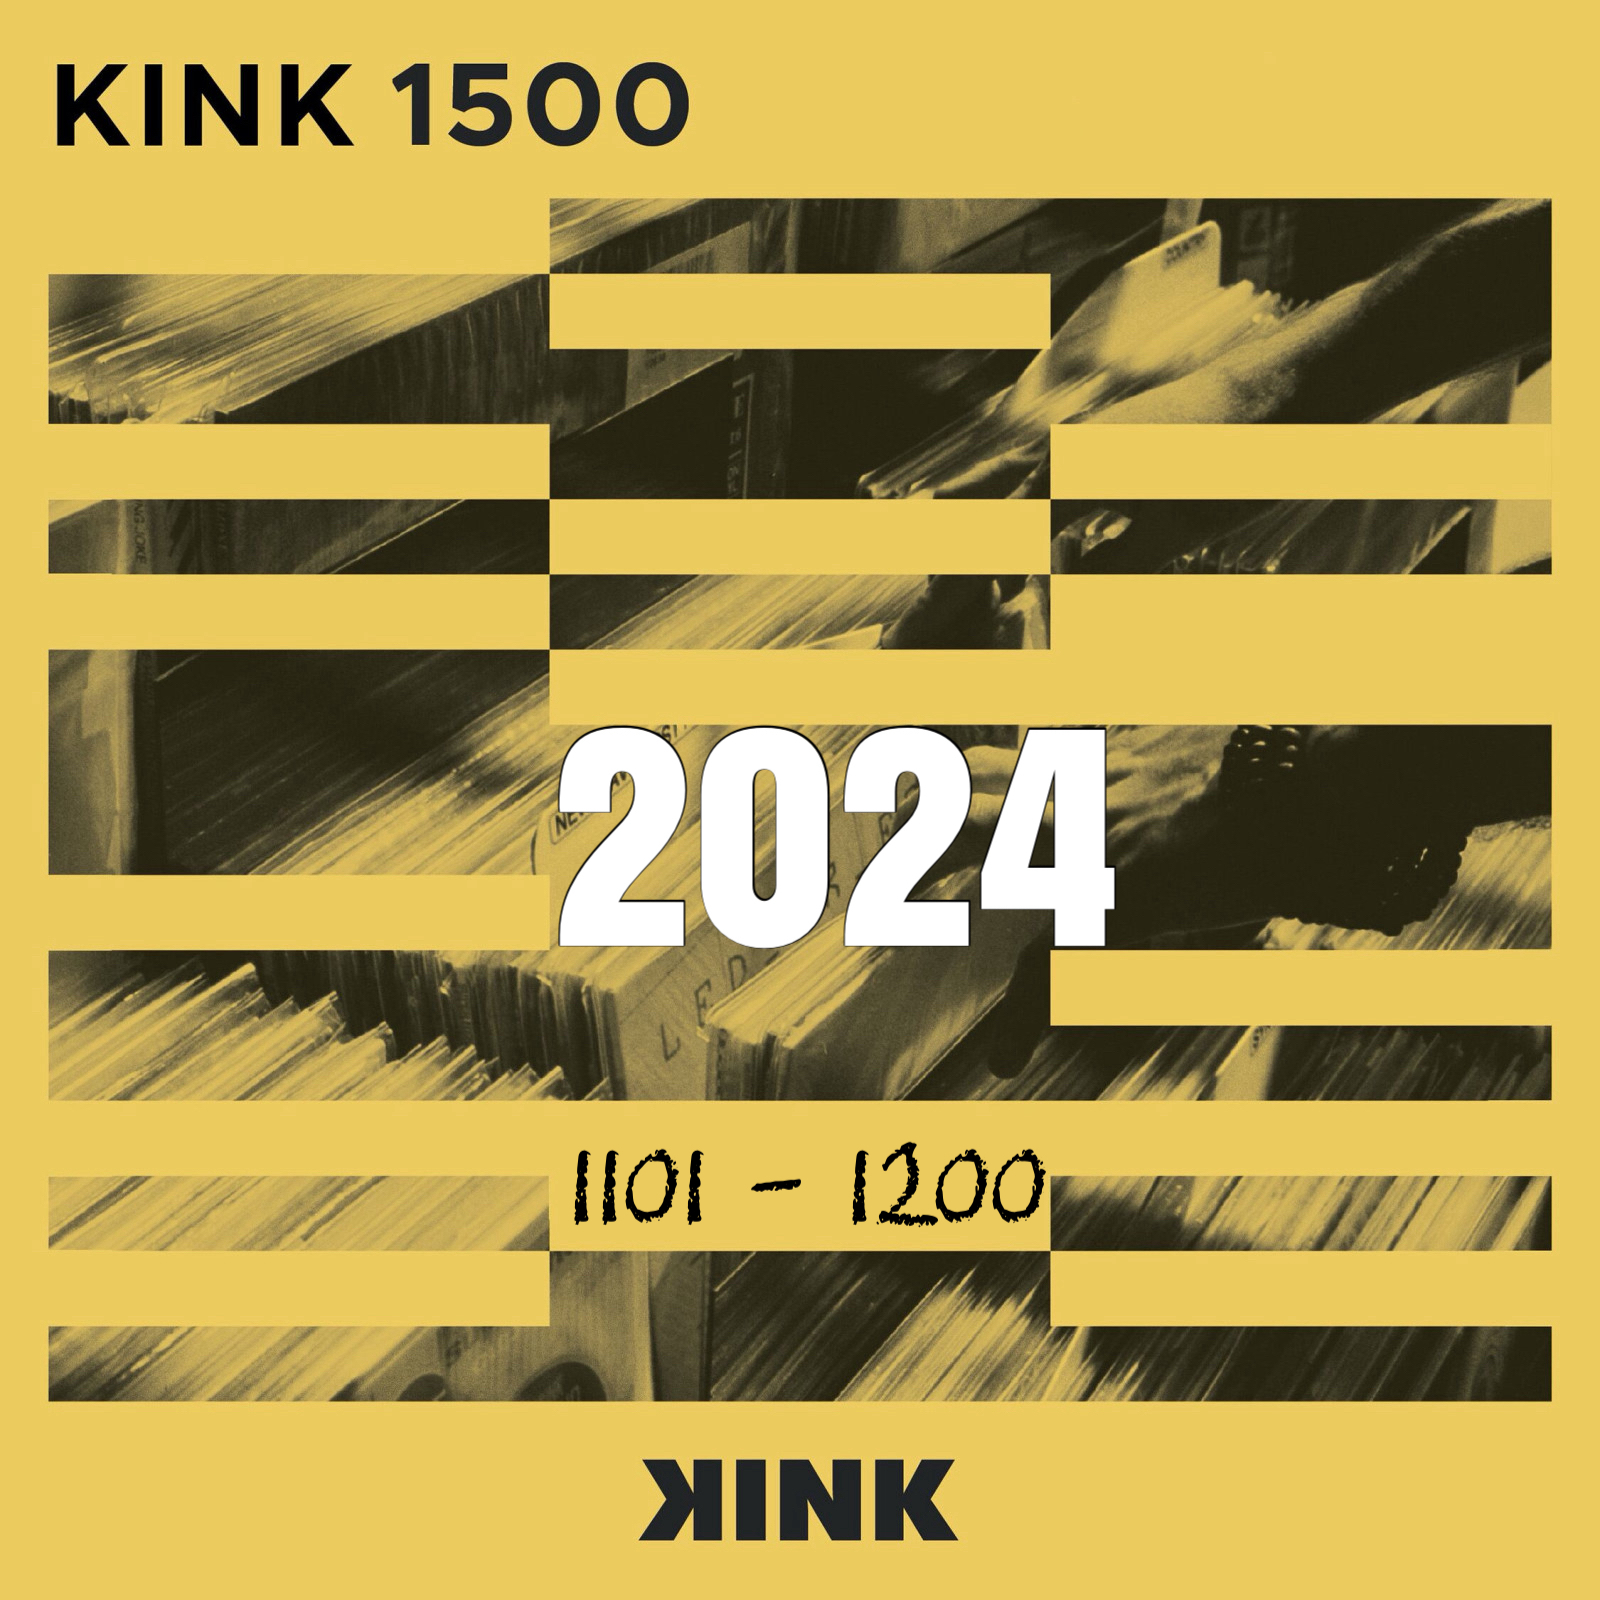 VA - Kink 1500 (2024) (1101- 1200)